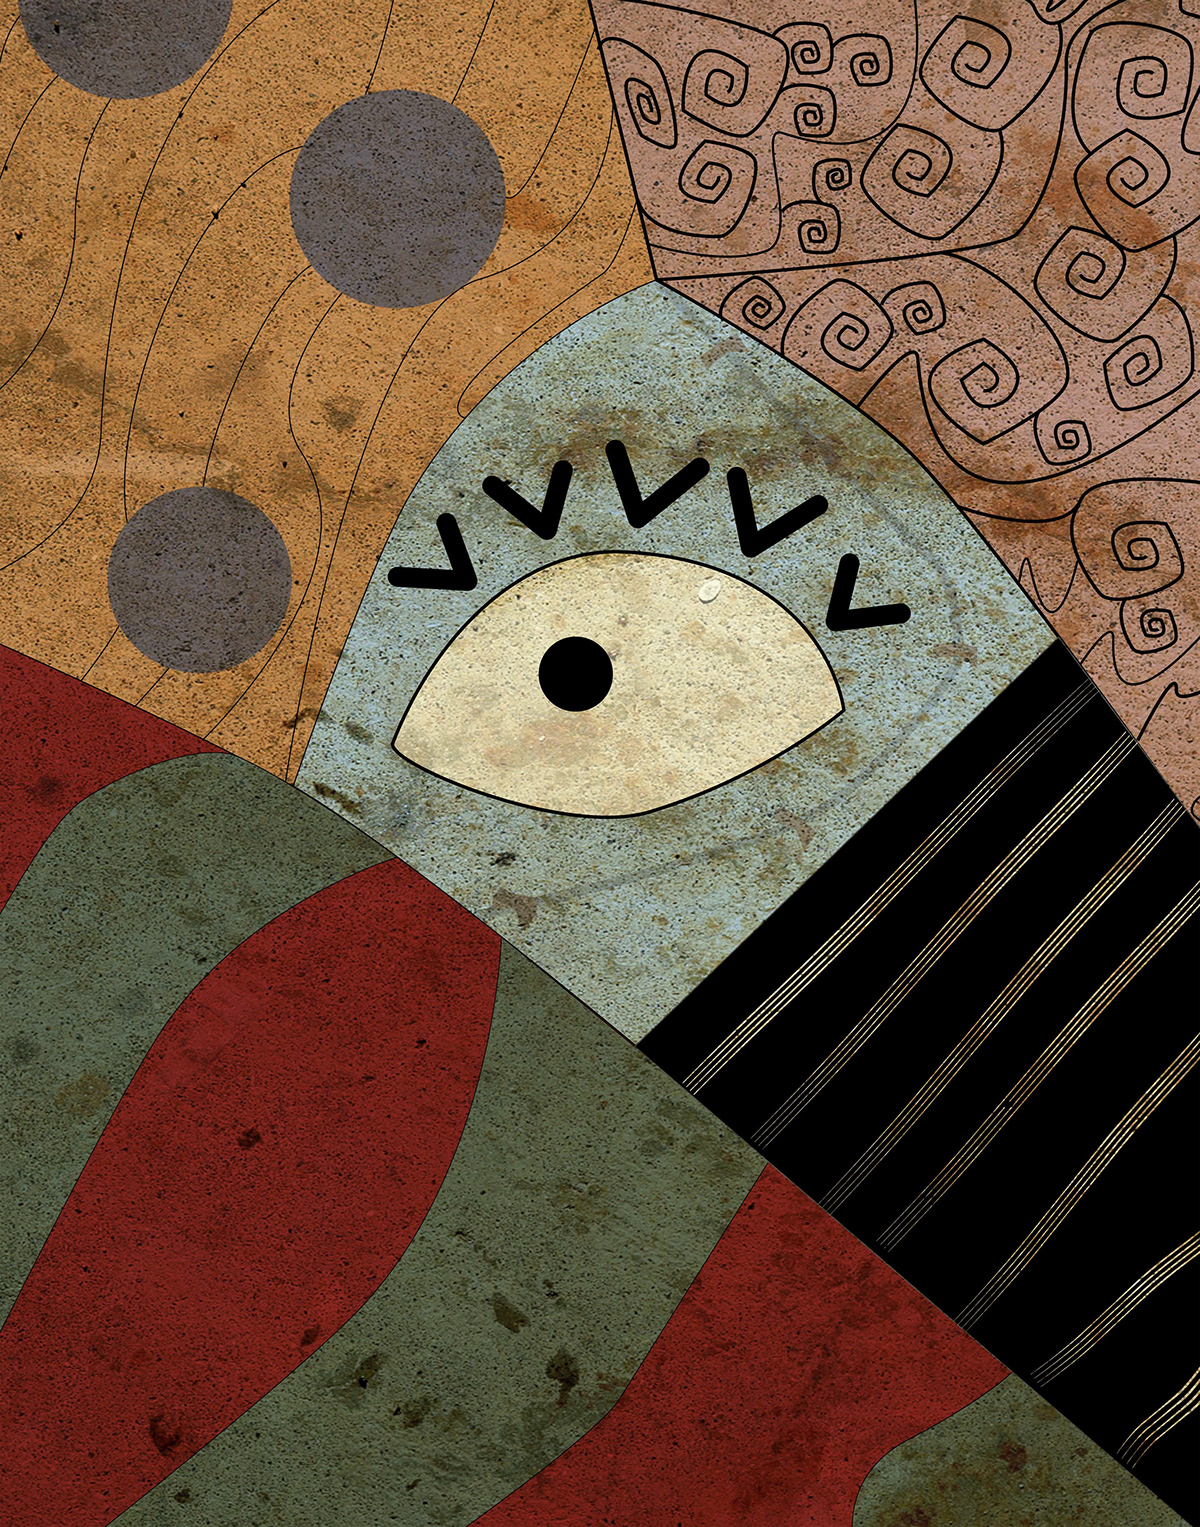 Sally EXTRAÑO MUNDO de jack Tim Burton pelicula jordan worrall afiche abstracto